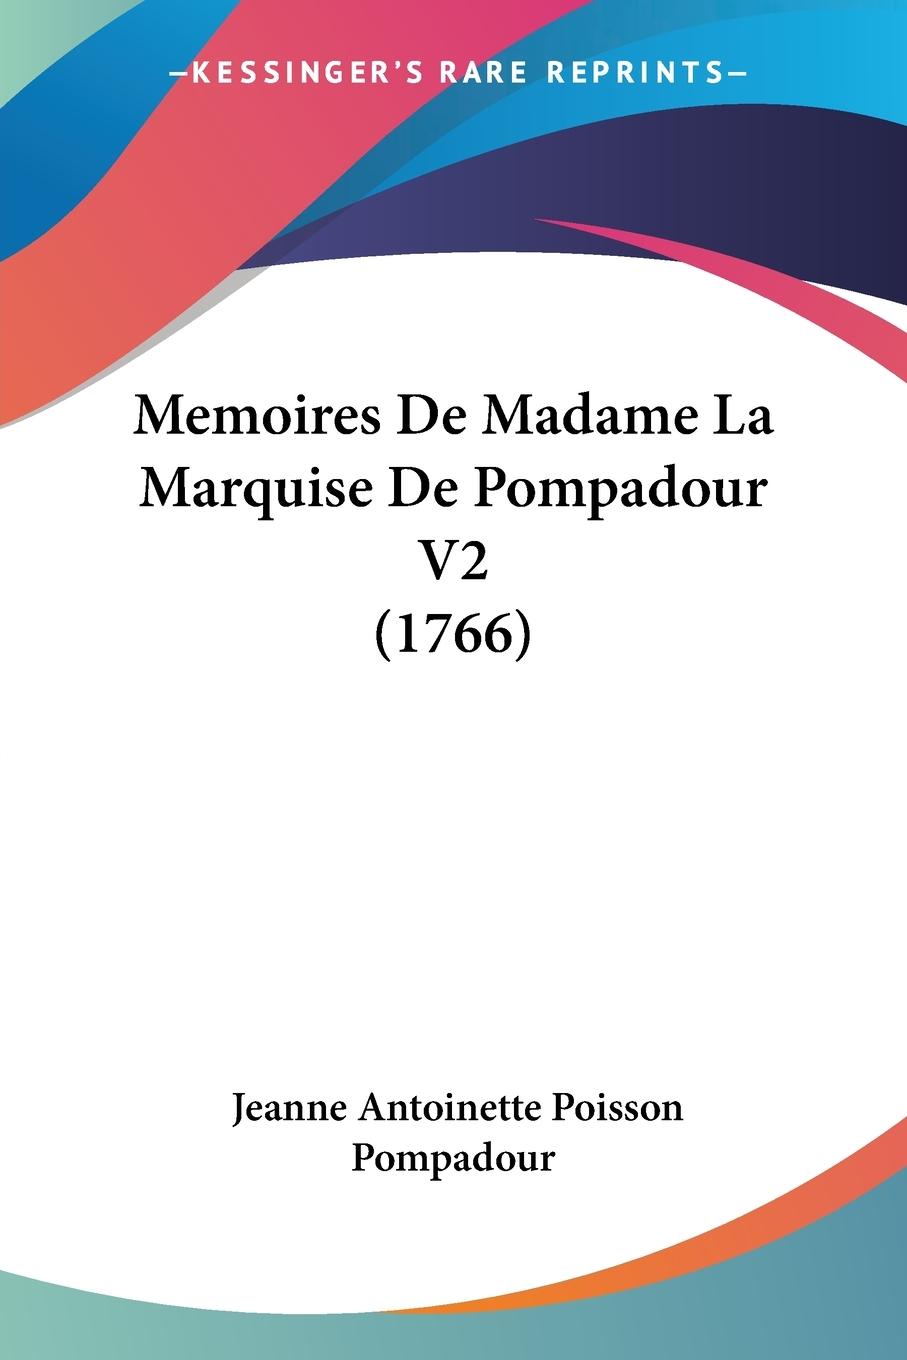 Memoires De Madame La Marquise De Pompadour V2 (1766) - Pompadour, Jeanne Antoinette Poisson